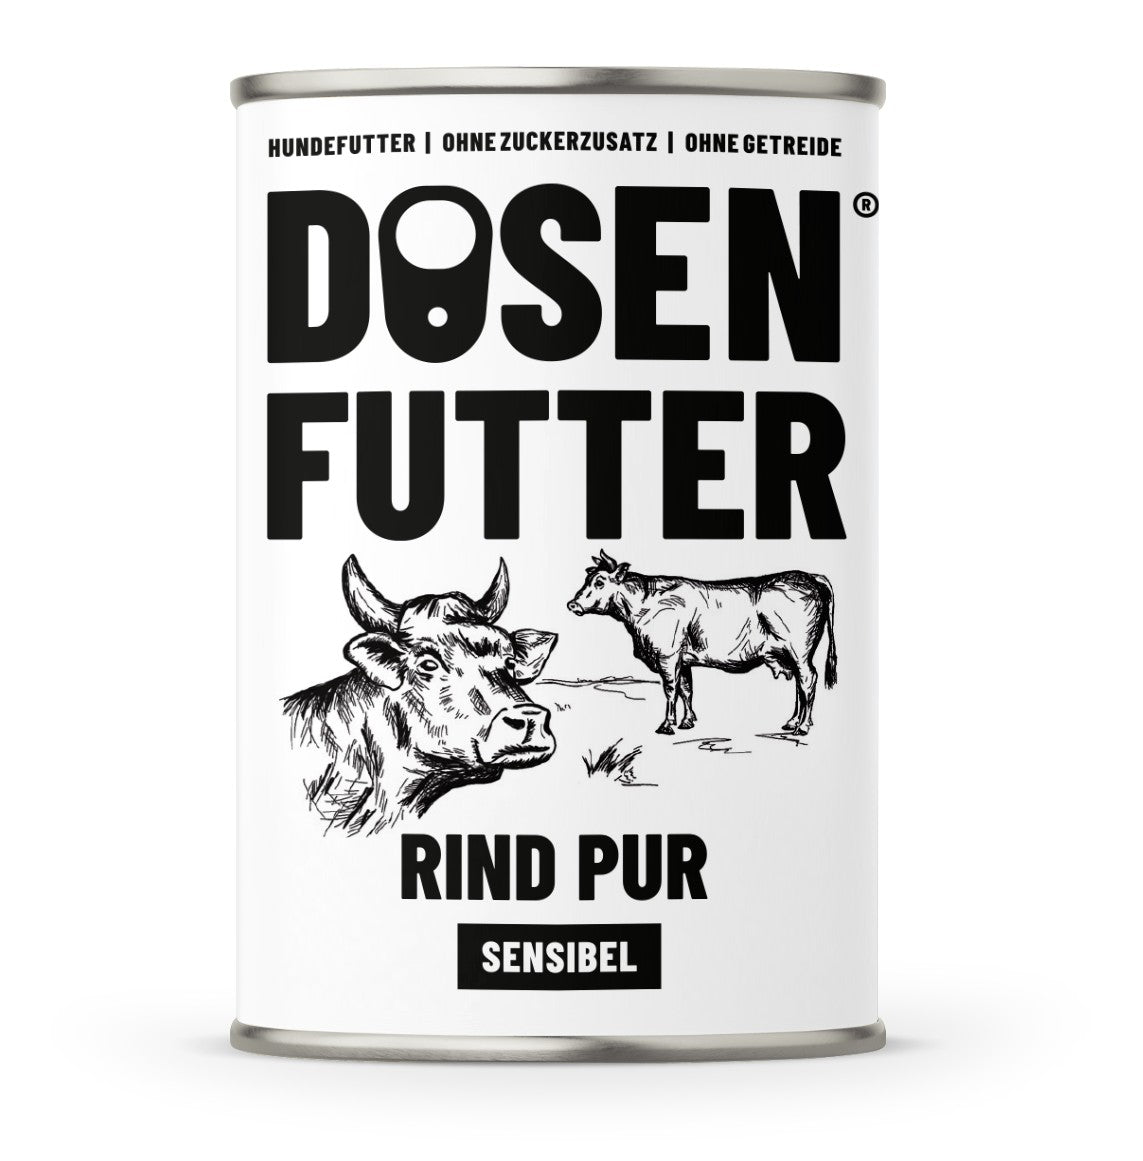 Artikel mit dem Namen Schnauze&Co Dosenfutter Rind Pur Sensibel für Hunde im Shop von zoo.de , dem Onlineshop für nachhaltiges Hundefutter und Katzenfutter.